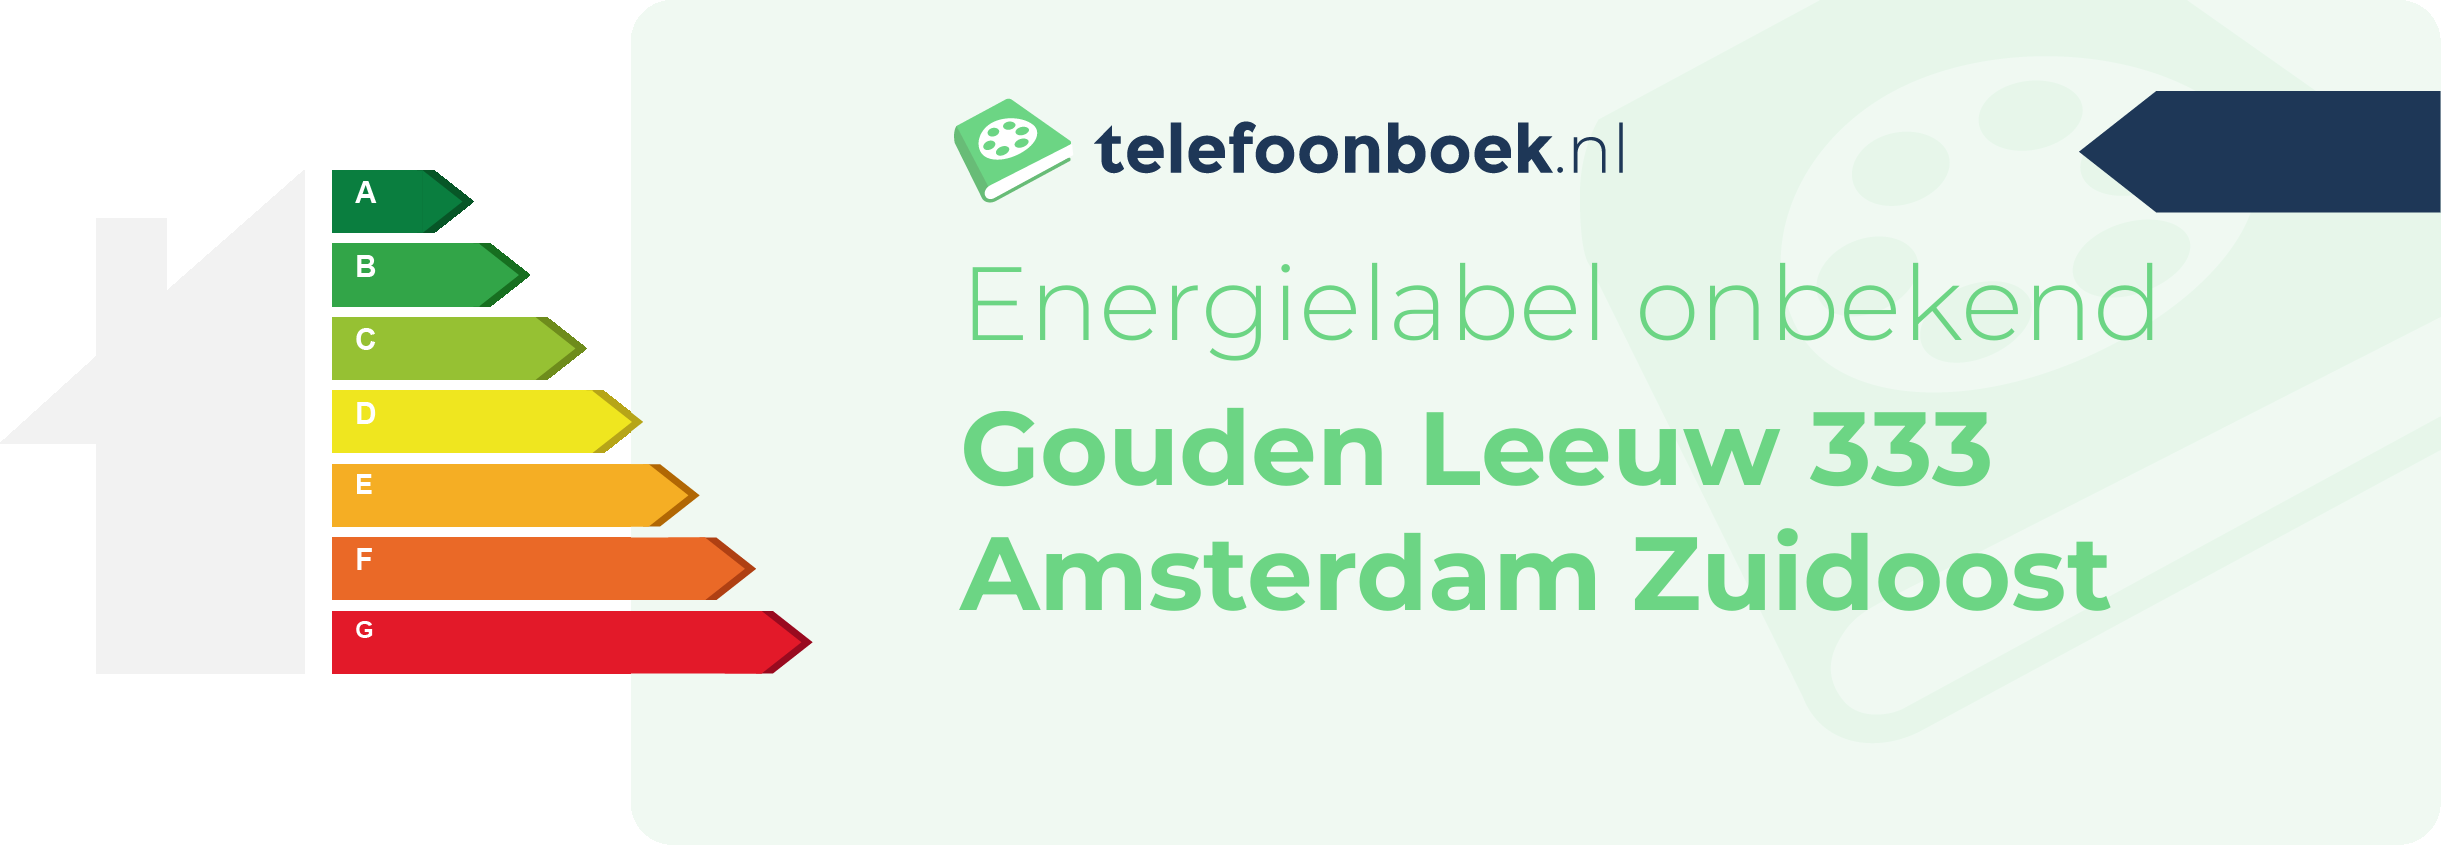 Energielabel Gouden Leeuw 333 Amsterdam Zuidoost